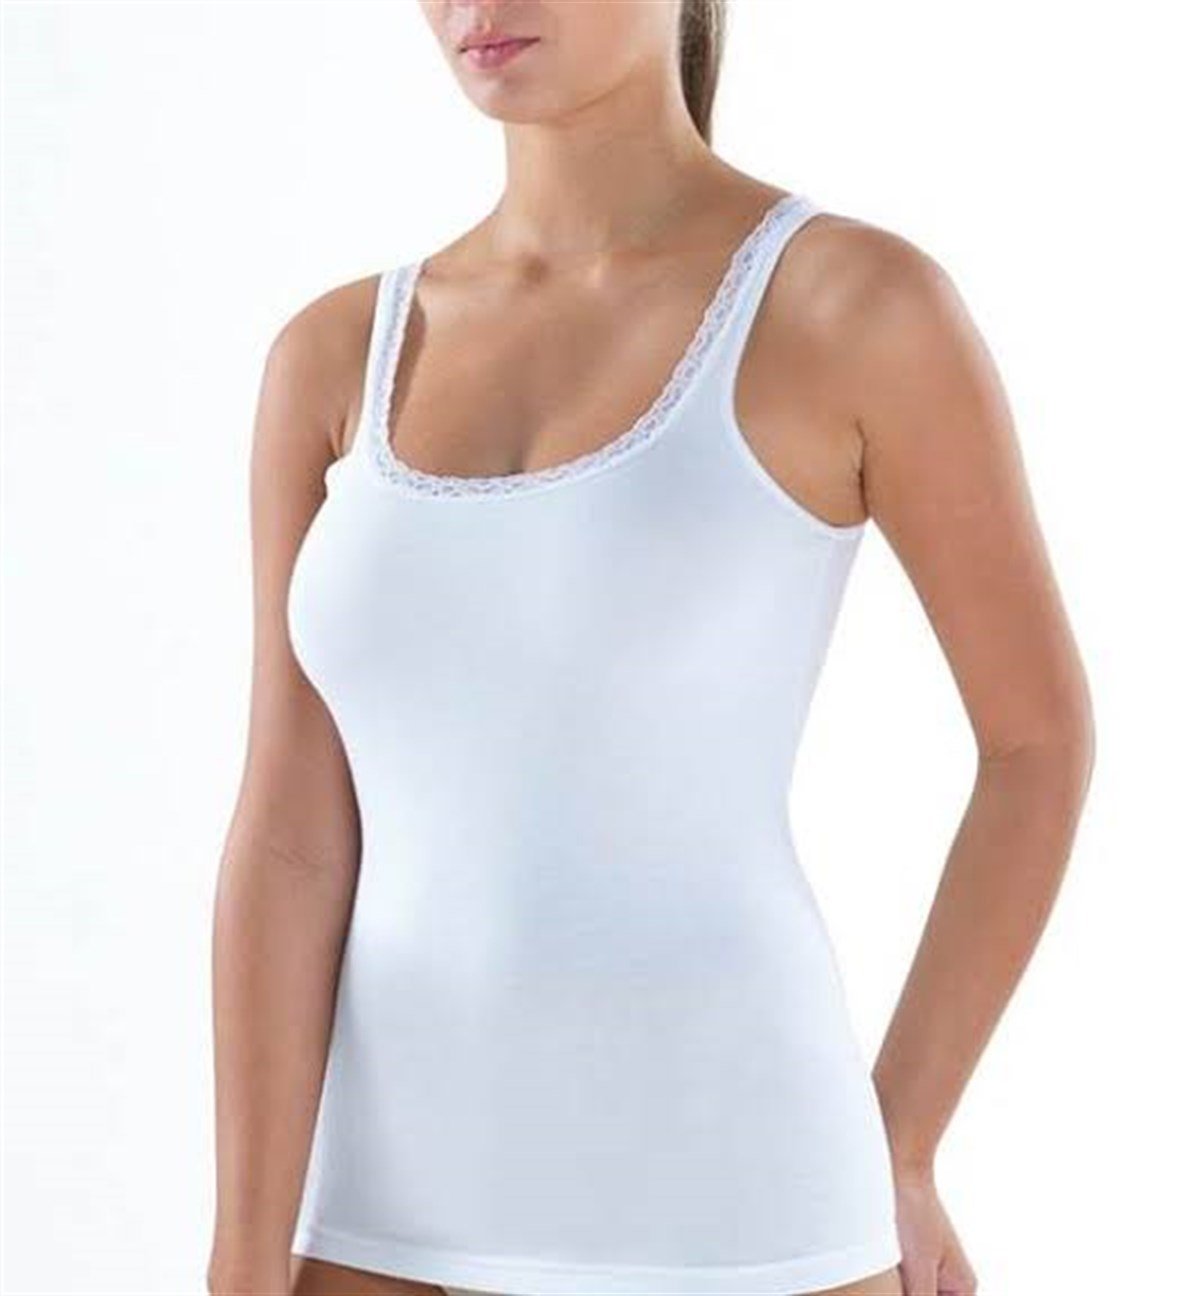 Blackspade Kadın Atlet Elegance 1364 Yeni Sezon! Moda! Ürünler Rakipsiz  Fiyatlar İç Giyim, Ev Tekstili, Kozmetik, Çeyiz ve Daha Fazlası |  yoncatoptan.com